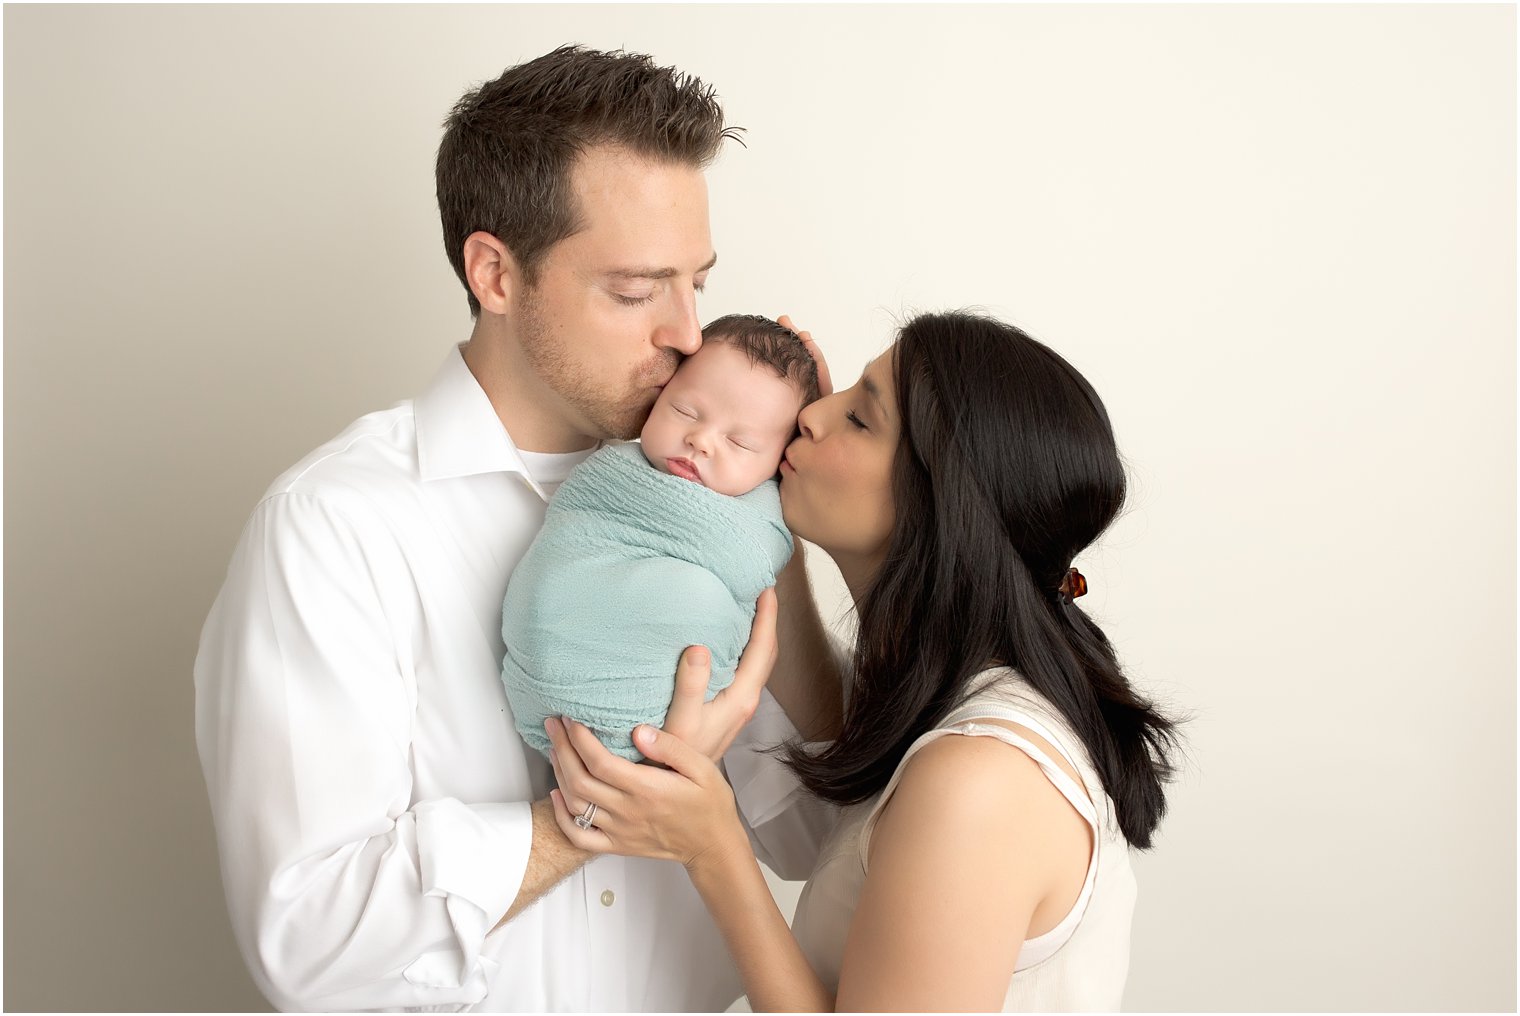 Newborn and parent photos